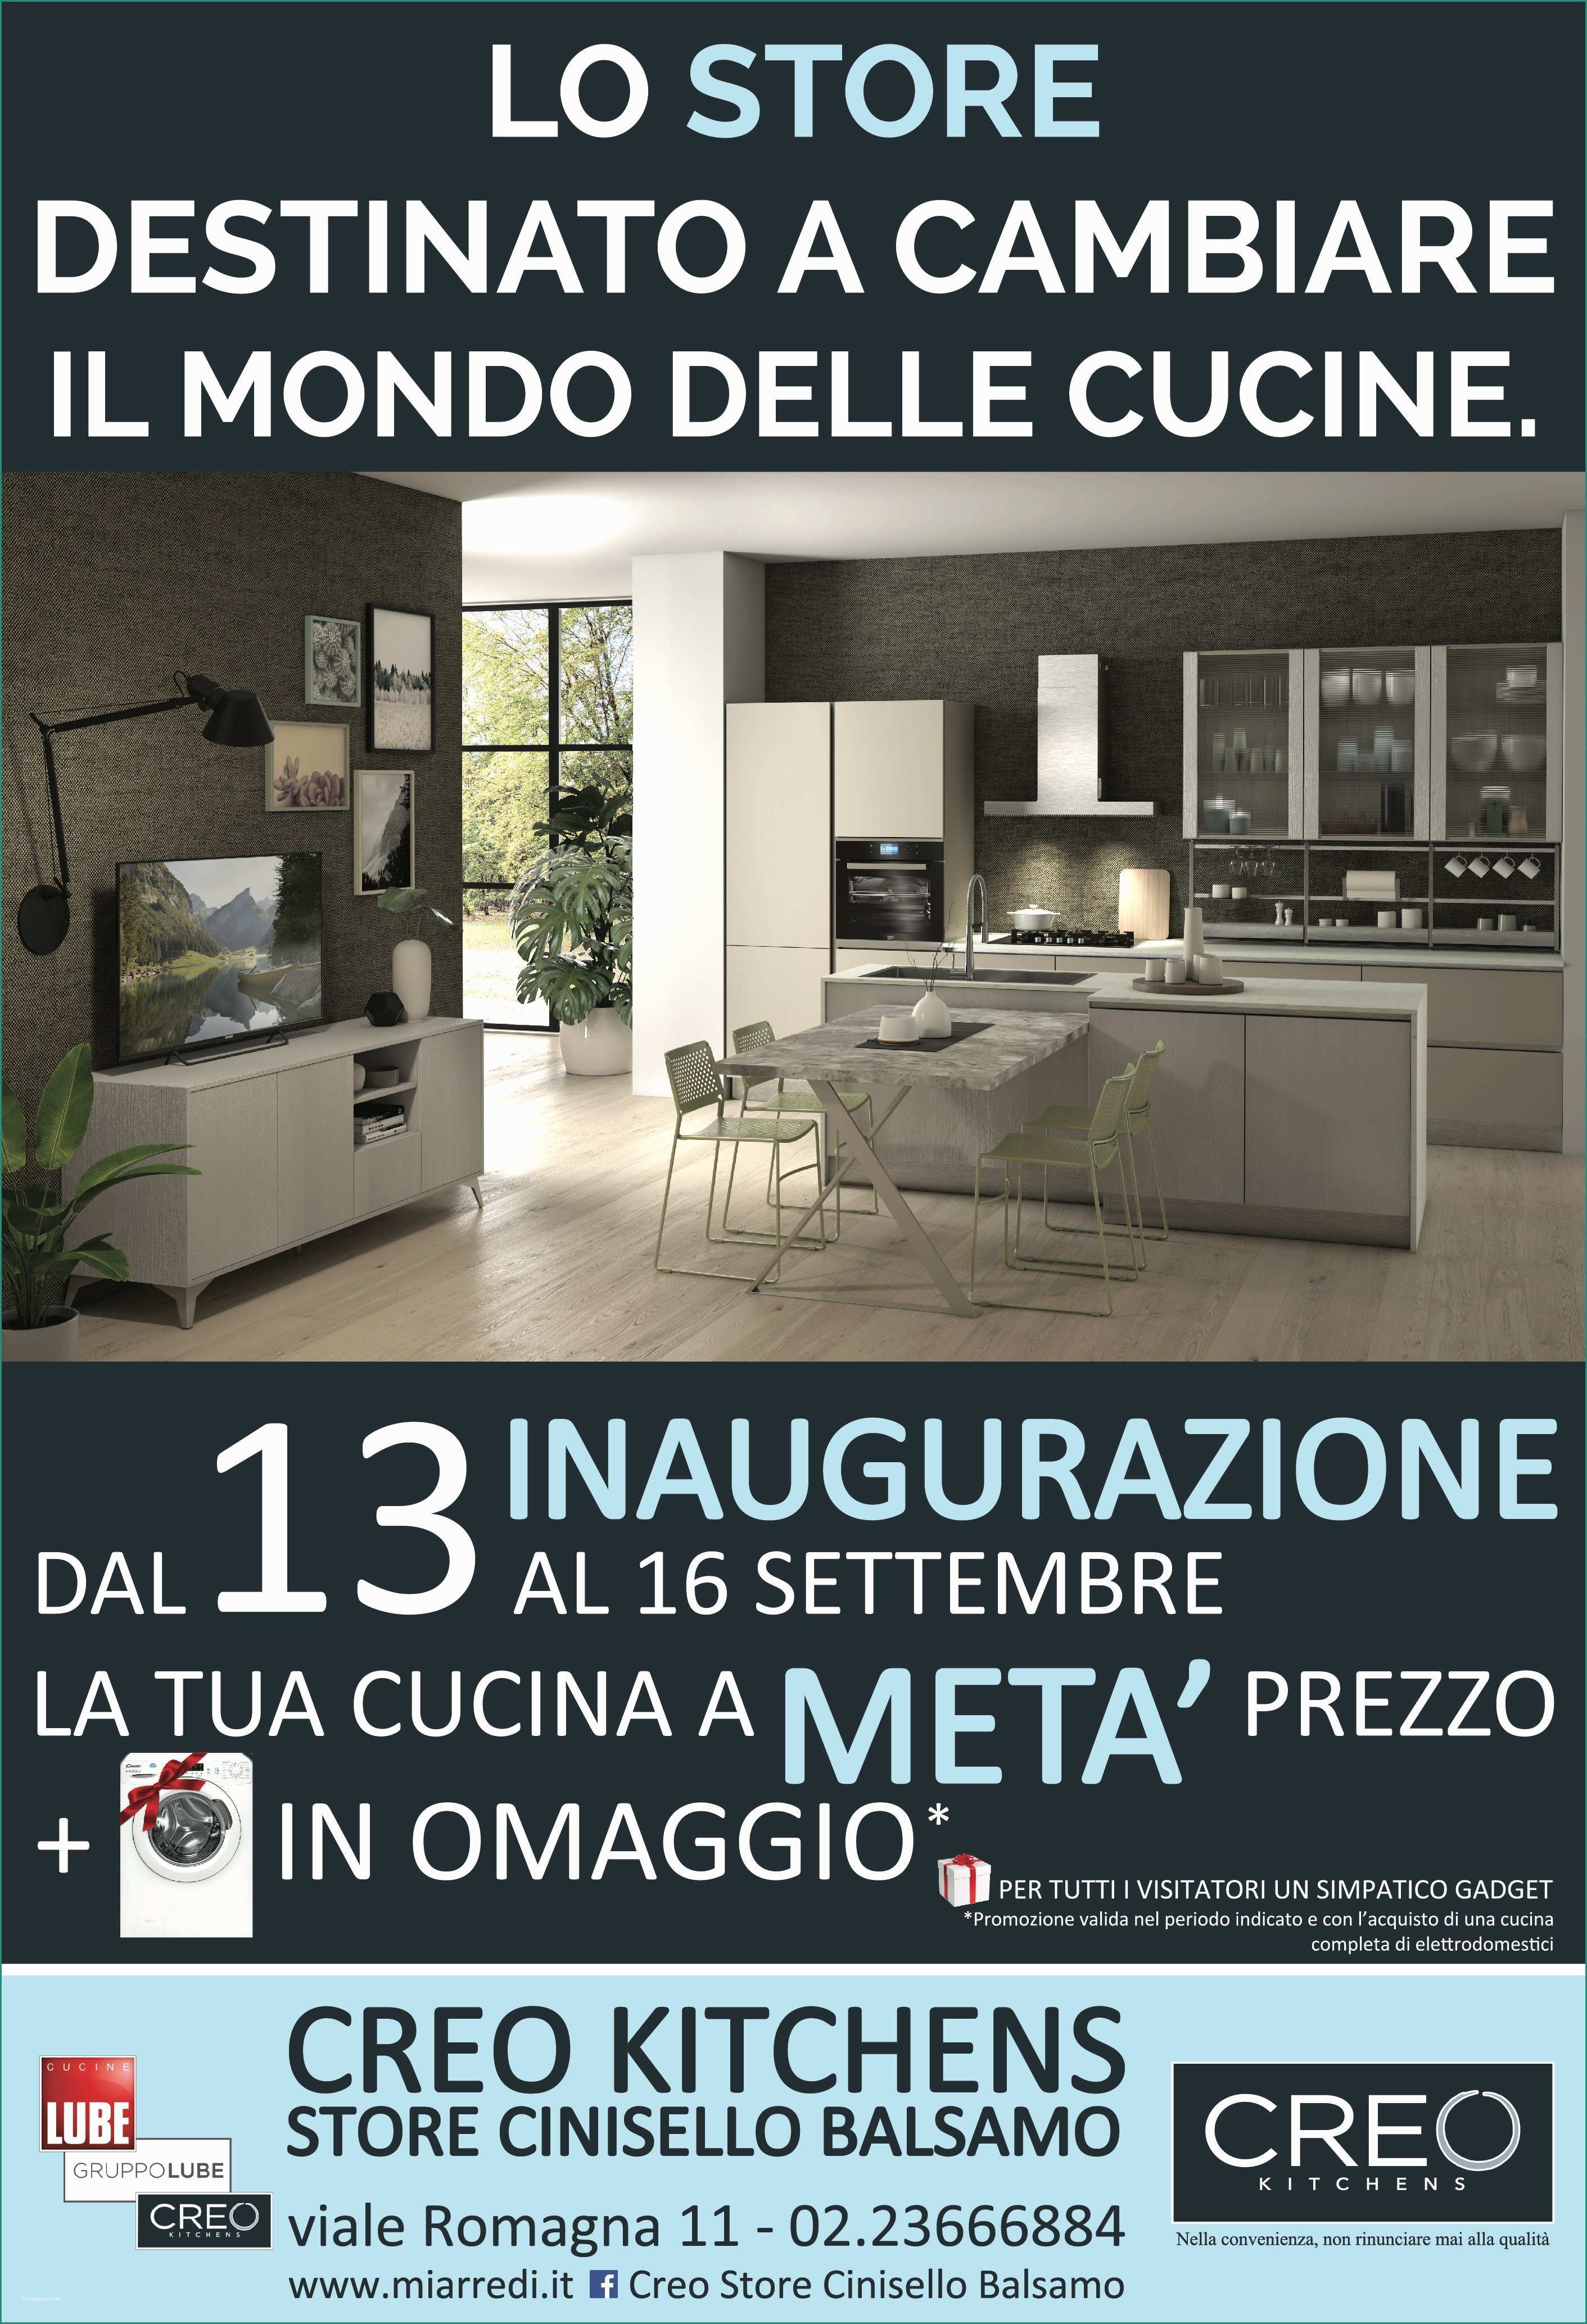 Lube Store Milano E Centro Cucine Lube Creo Kitchen Camerette Moretti Pact A Milano